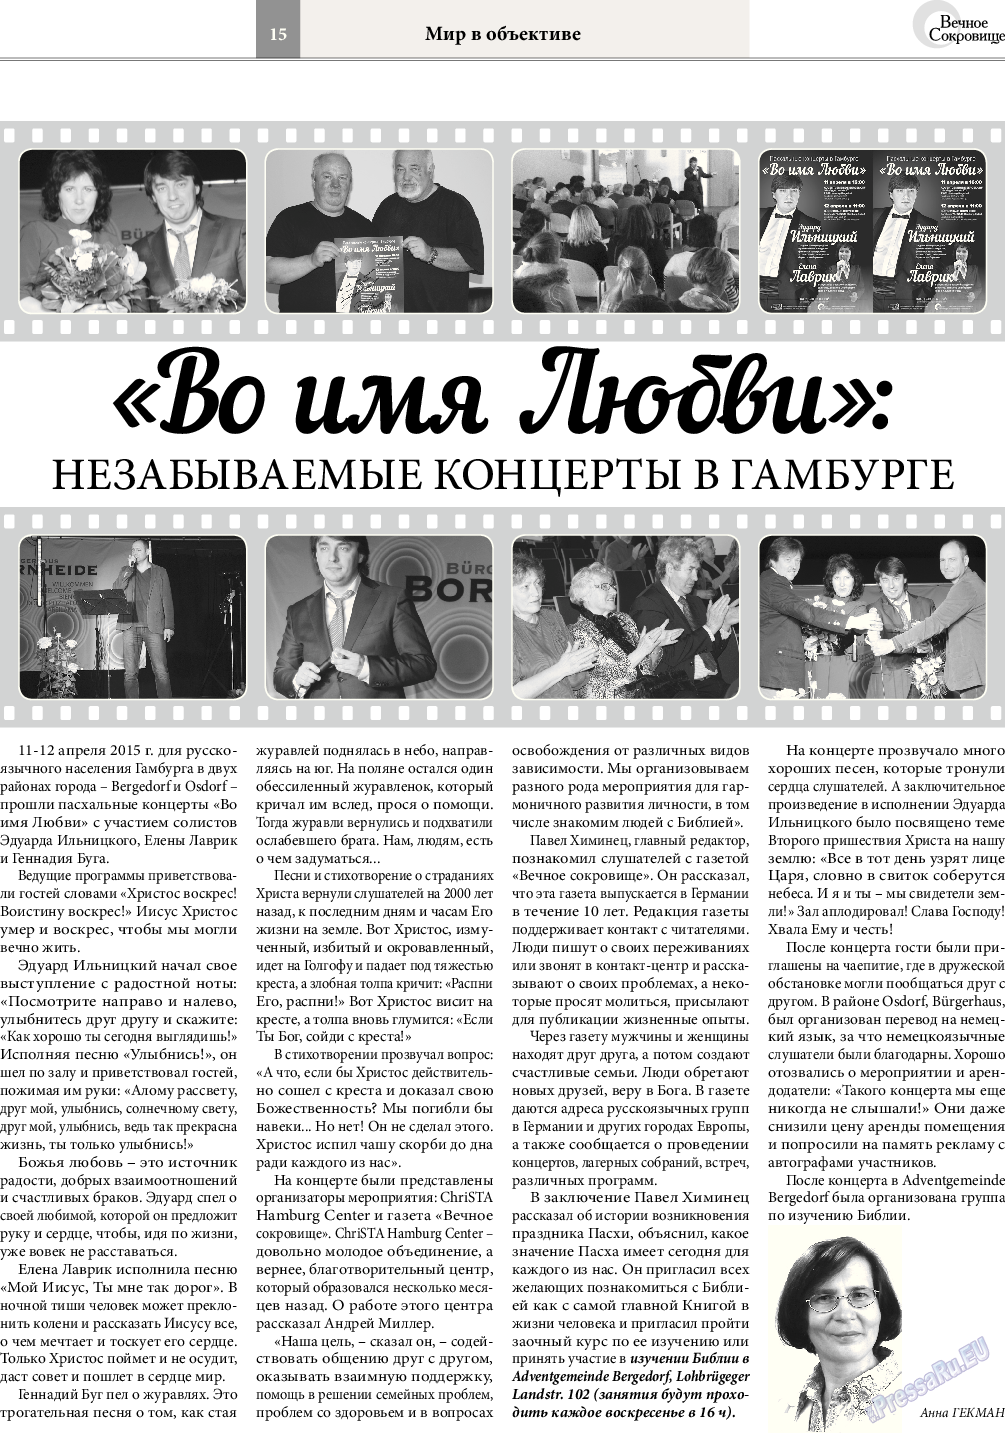 Вечное сокровище, газета. 2015 №3 стр.15